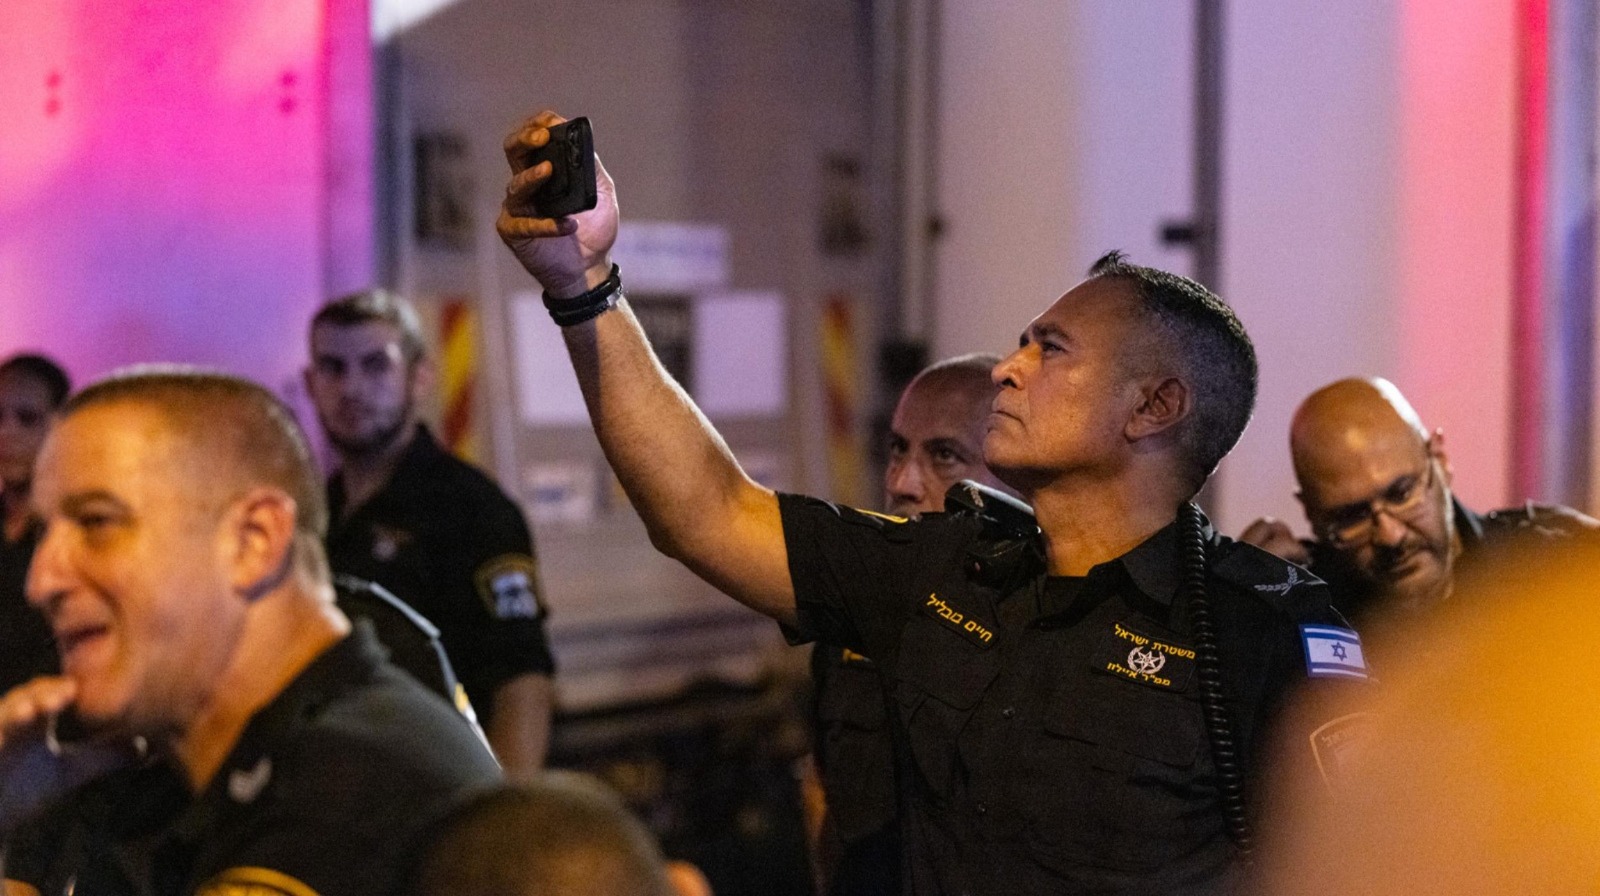 שוטר מצלם מפגינים | צילום: מולי גולדברג